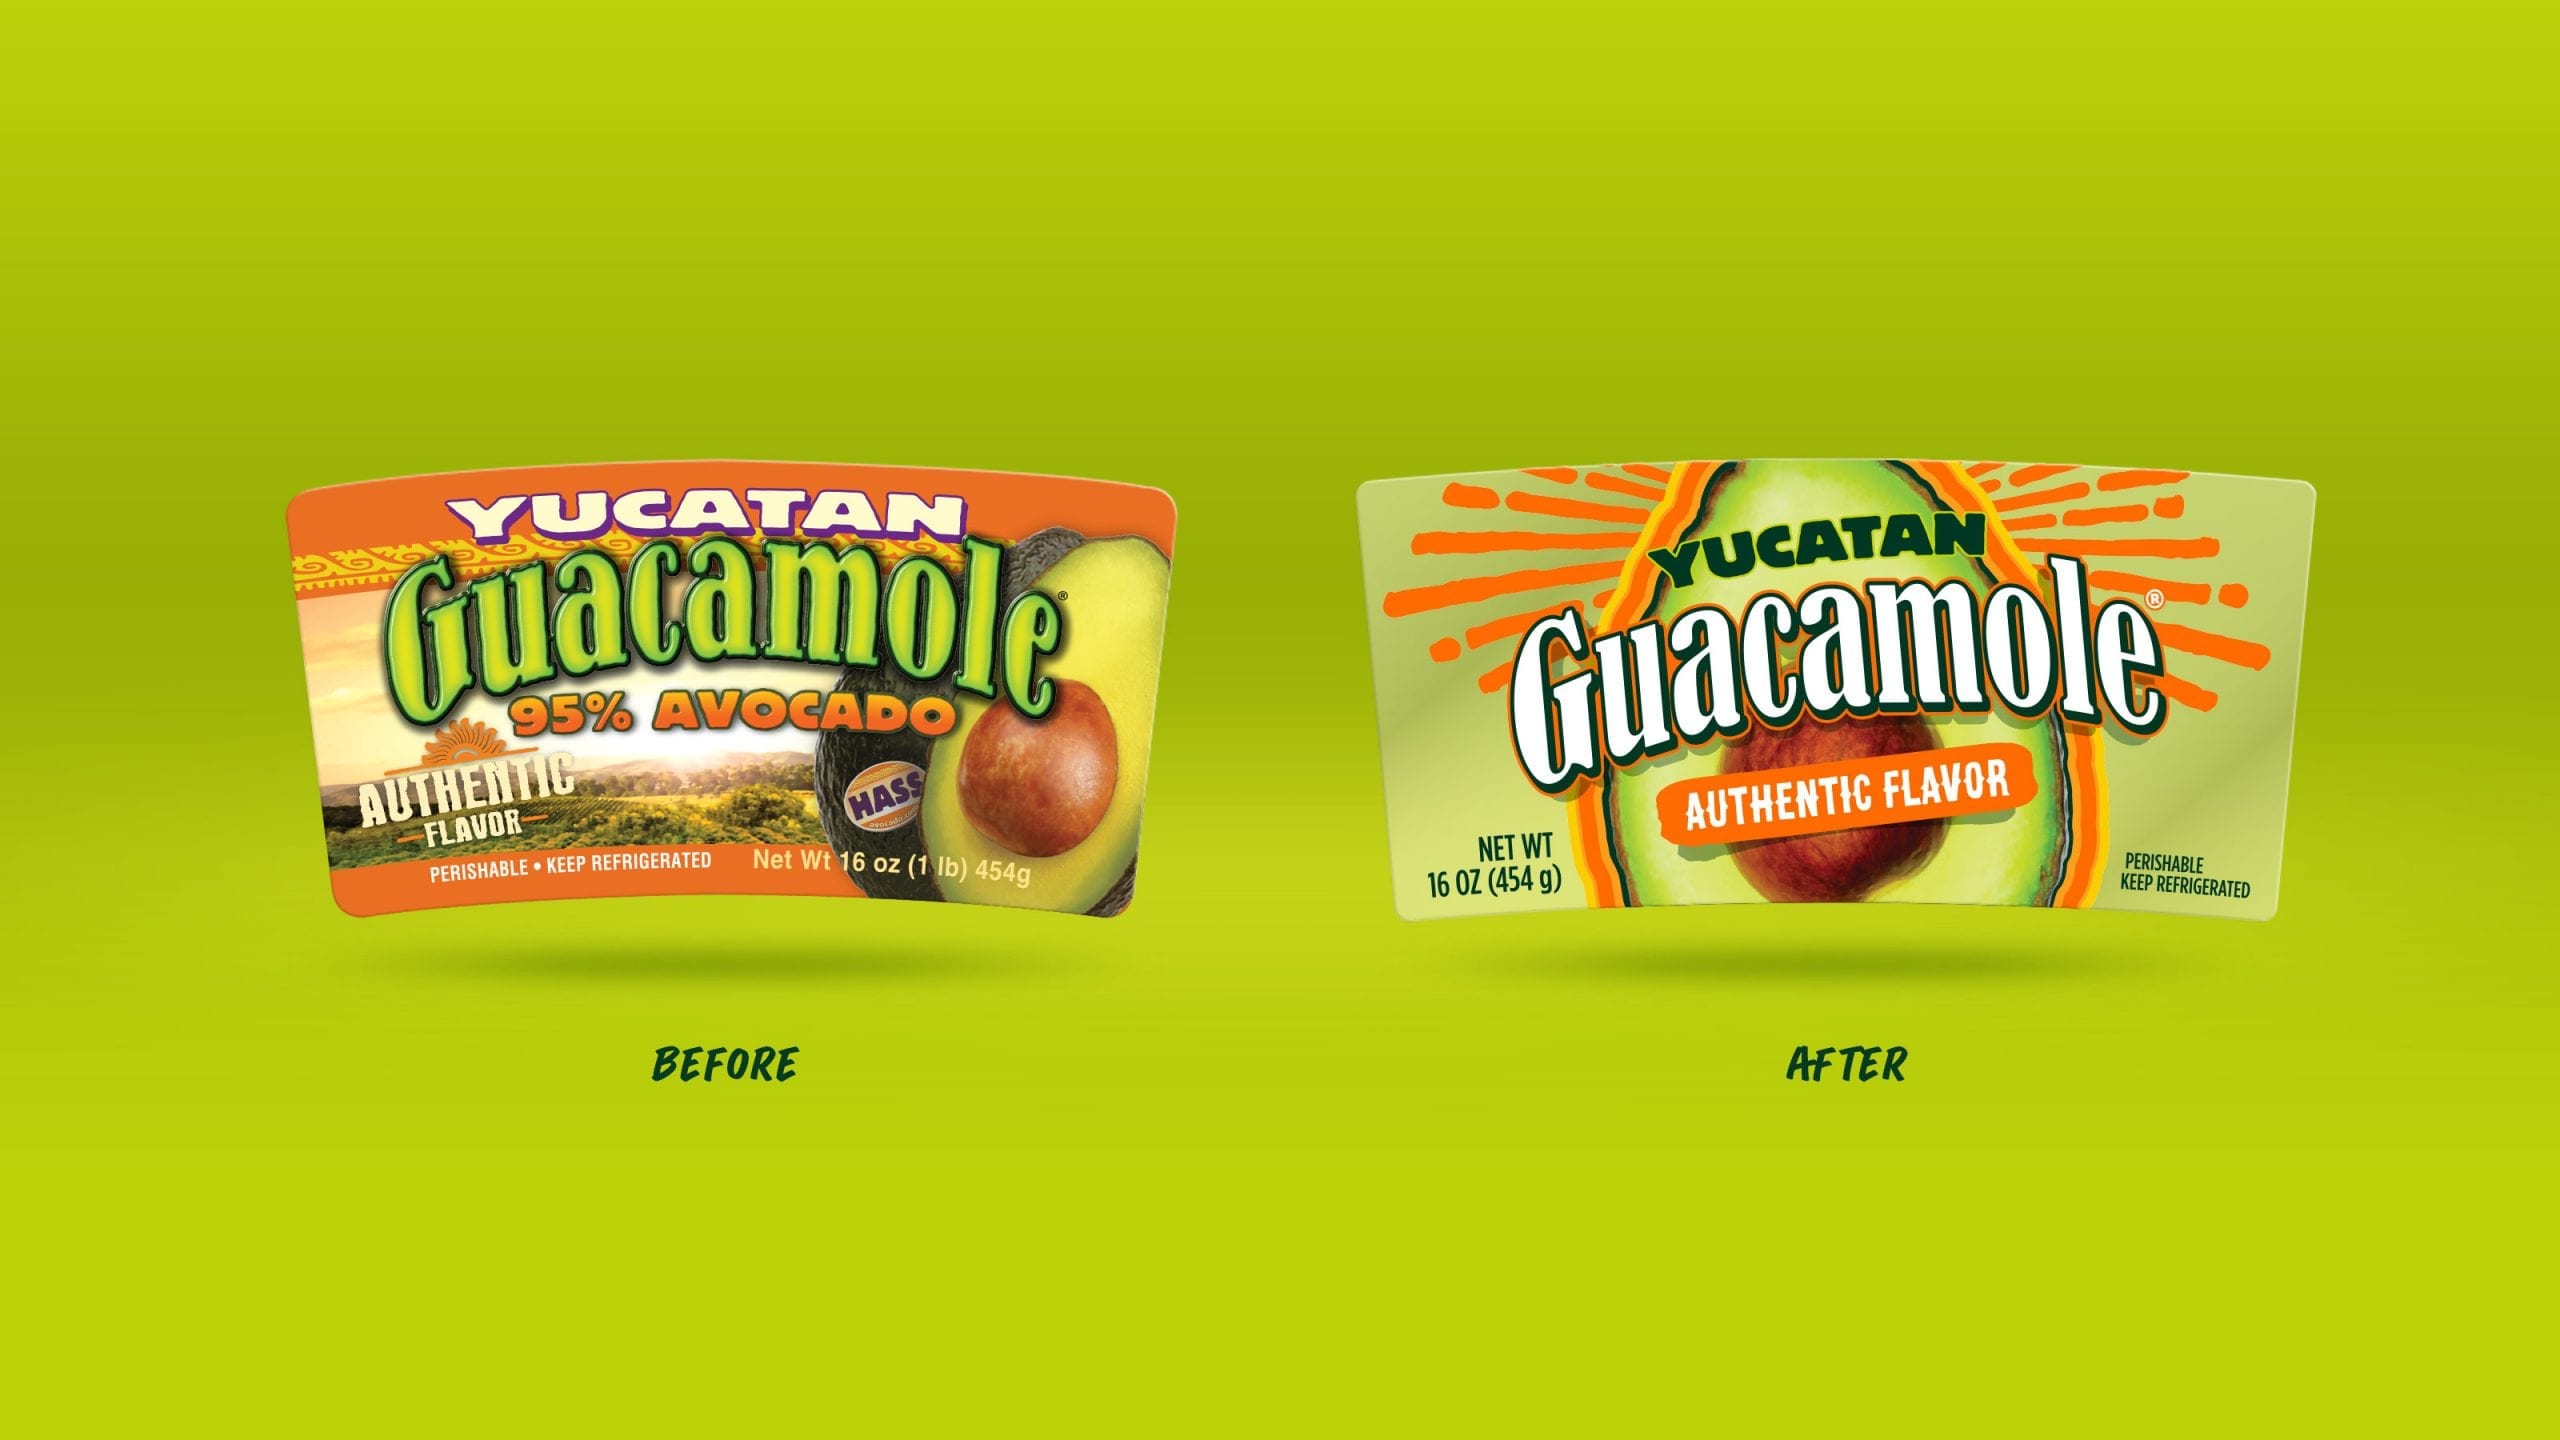 yucatan guacamole package design